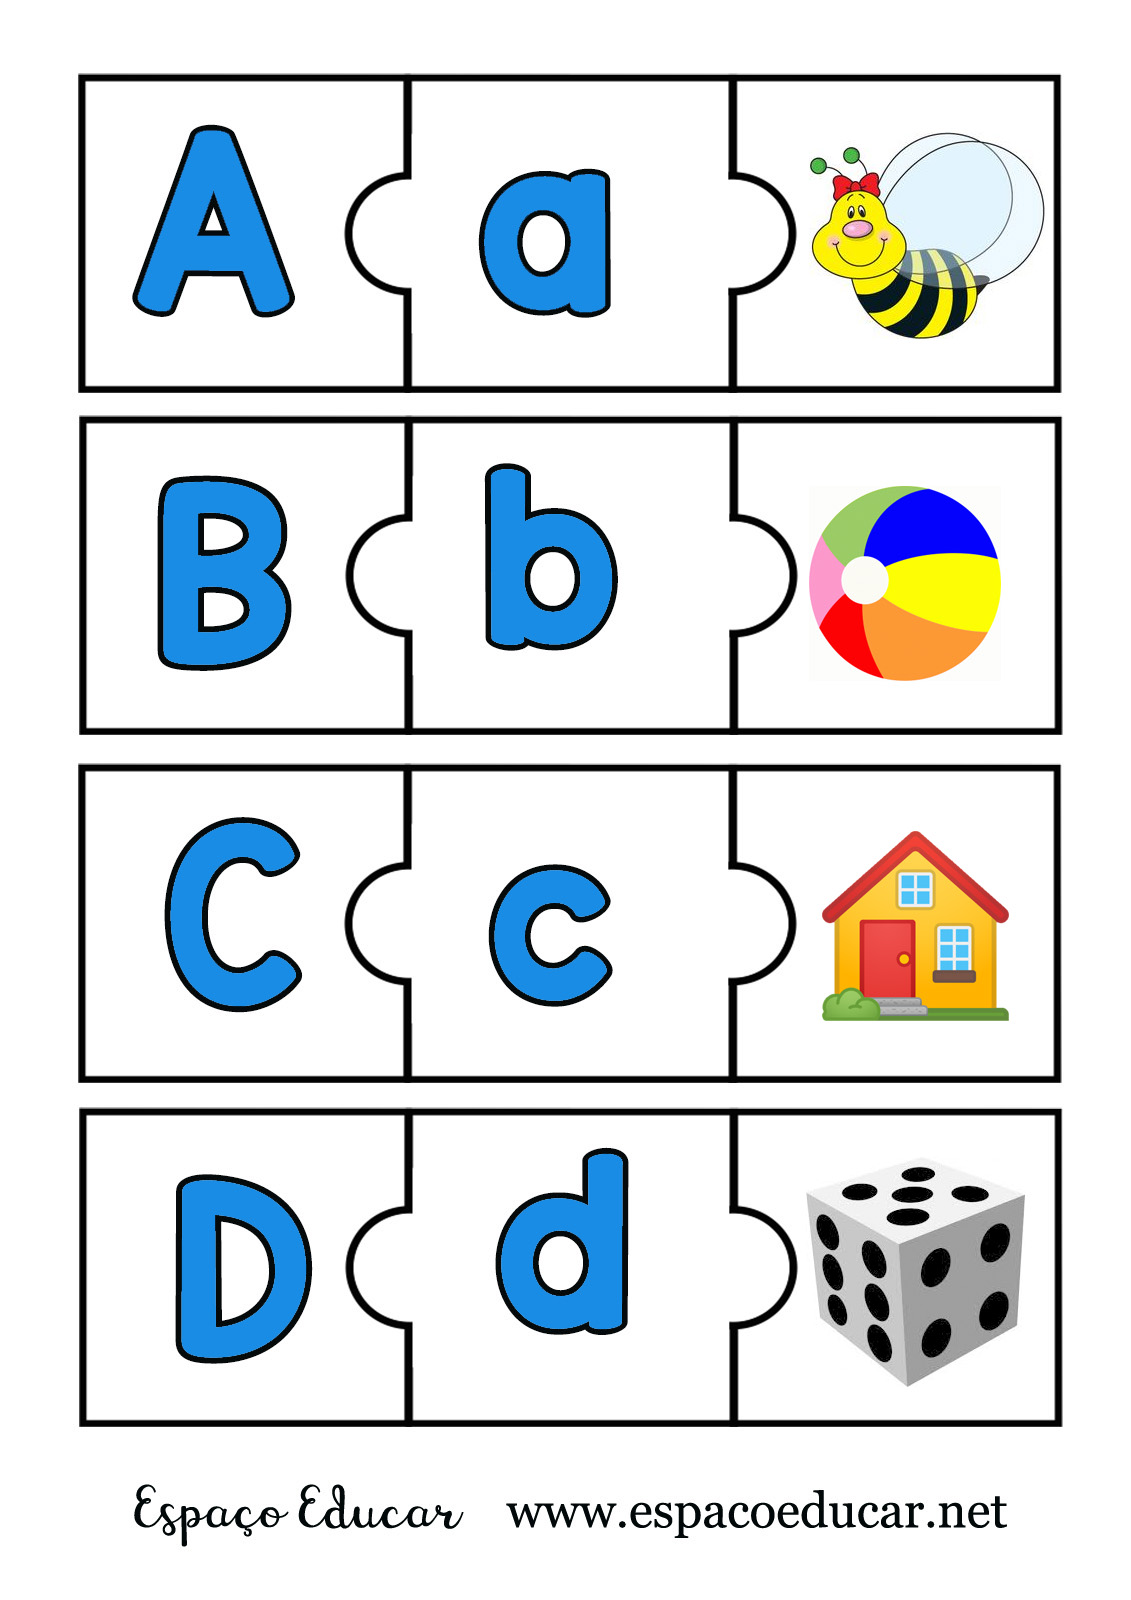 Jogos do alfabeto, Atividades letra e, Atividades alfabetização e letramento